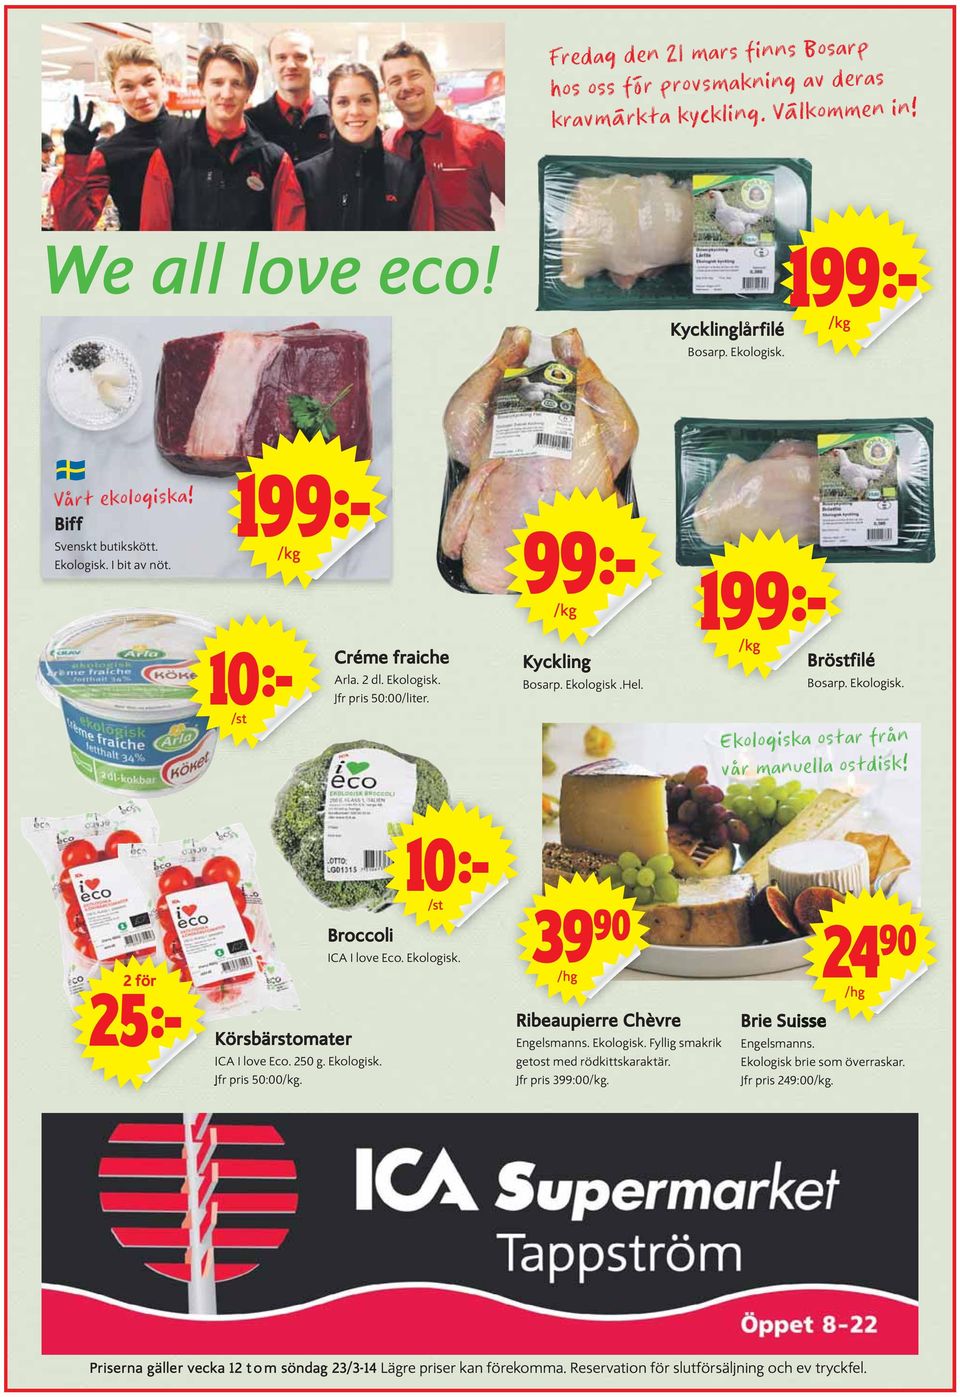 Ekologisk. Ekologiska ostar från vår manuella ostdisk! /st Broccoli ICA I love Eco. Ekologisk. /hg /hg 2 för Körsbärstomater ICA I love Eco. 250 g. Ekologisk. Jfr pris 50:00/kg.